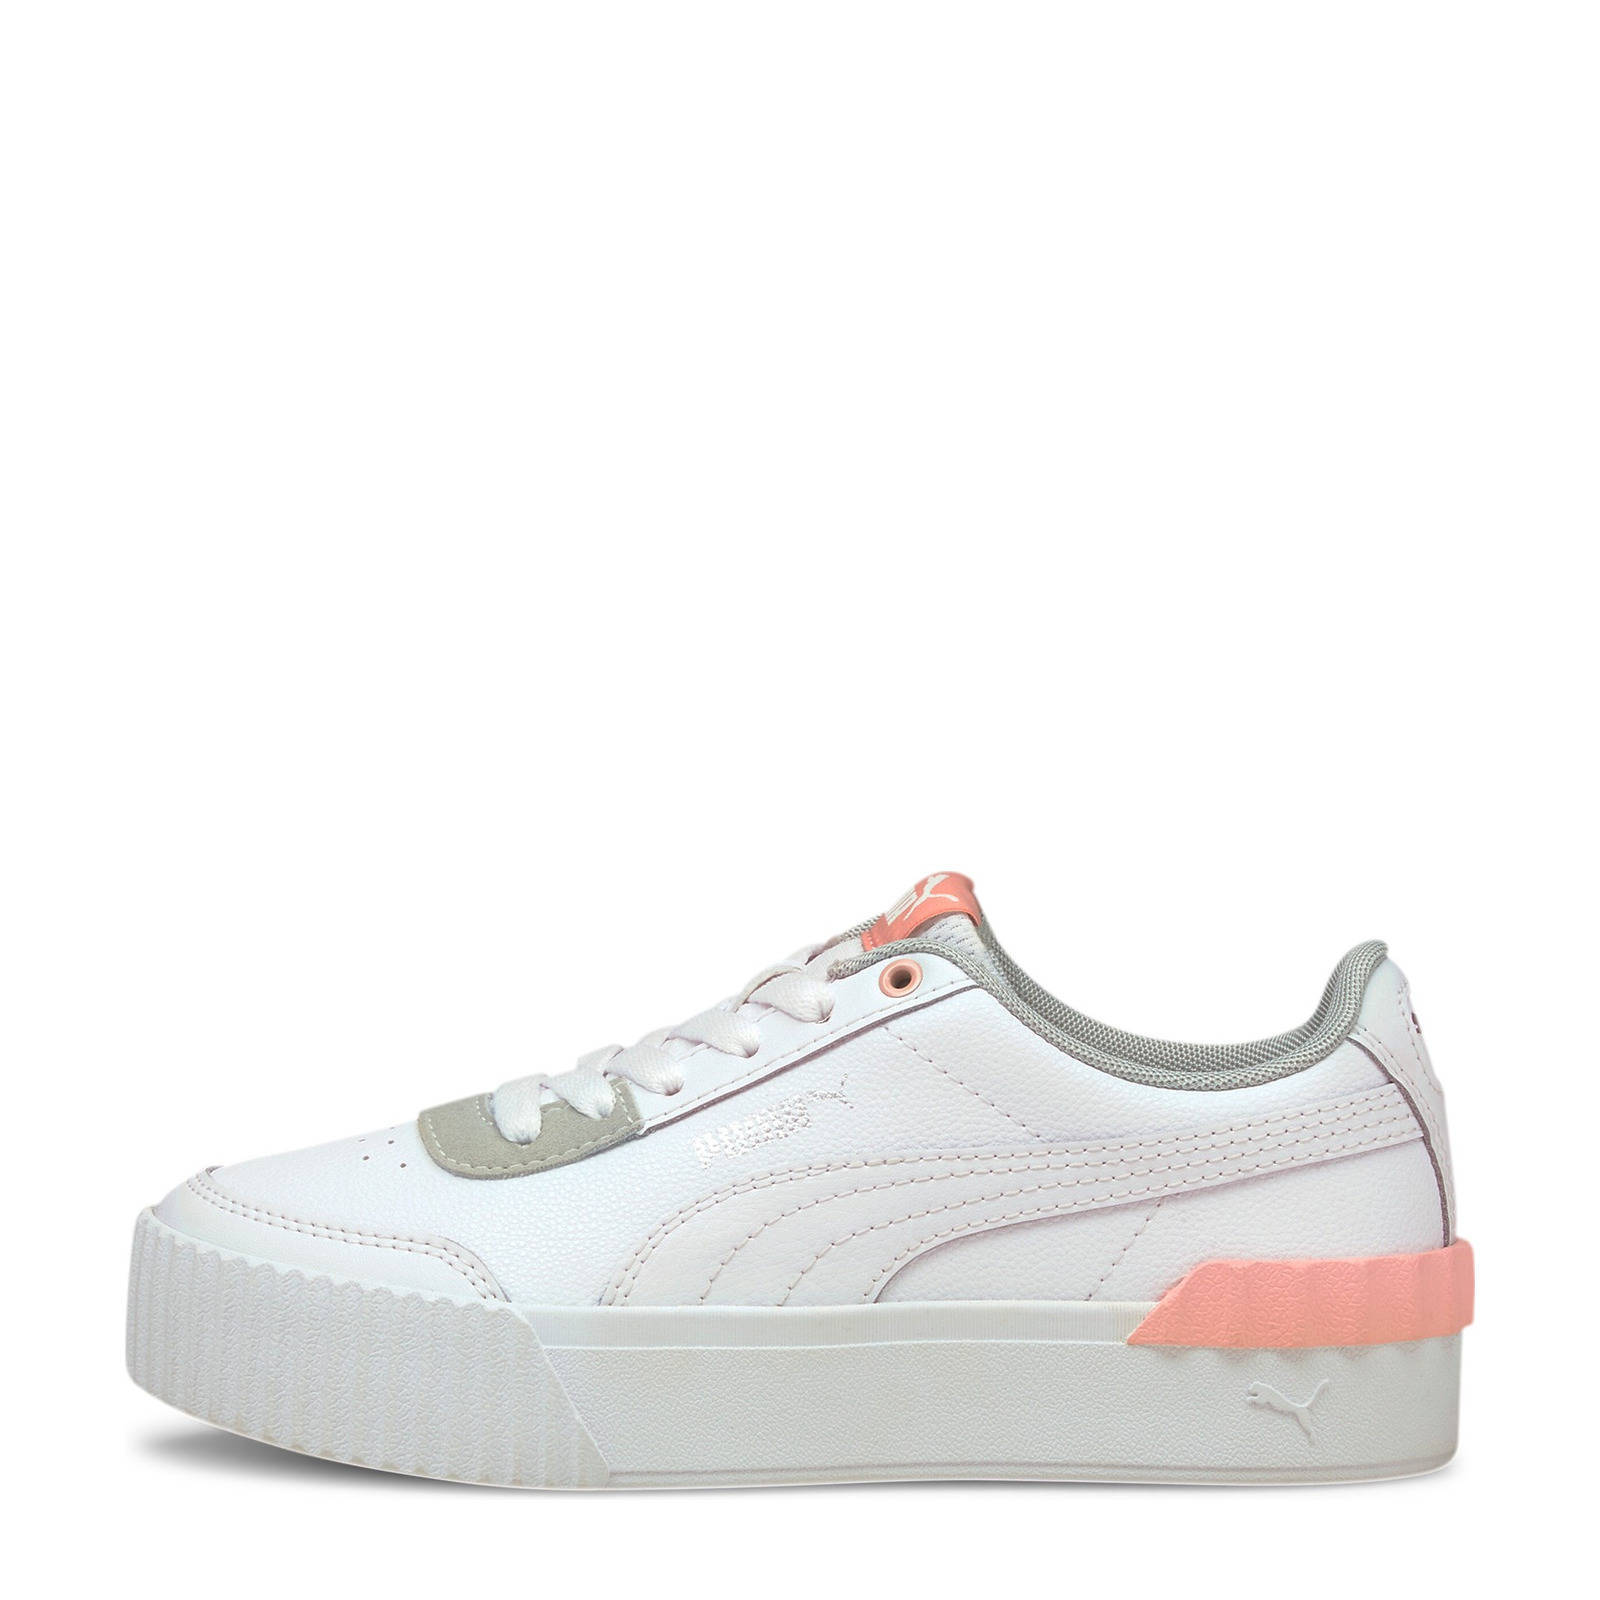 Puma Carina Lift Jr. sneakers wit/roze online kopen